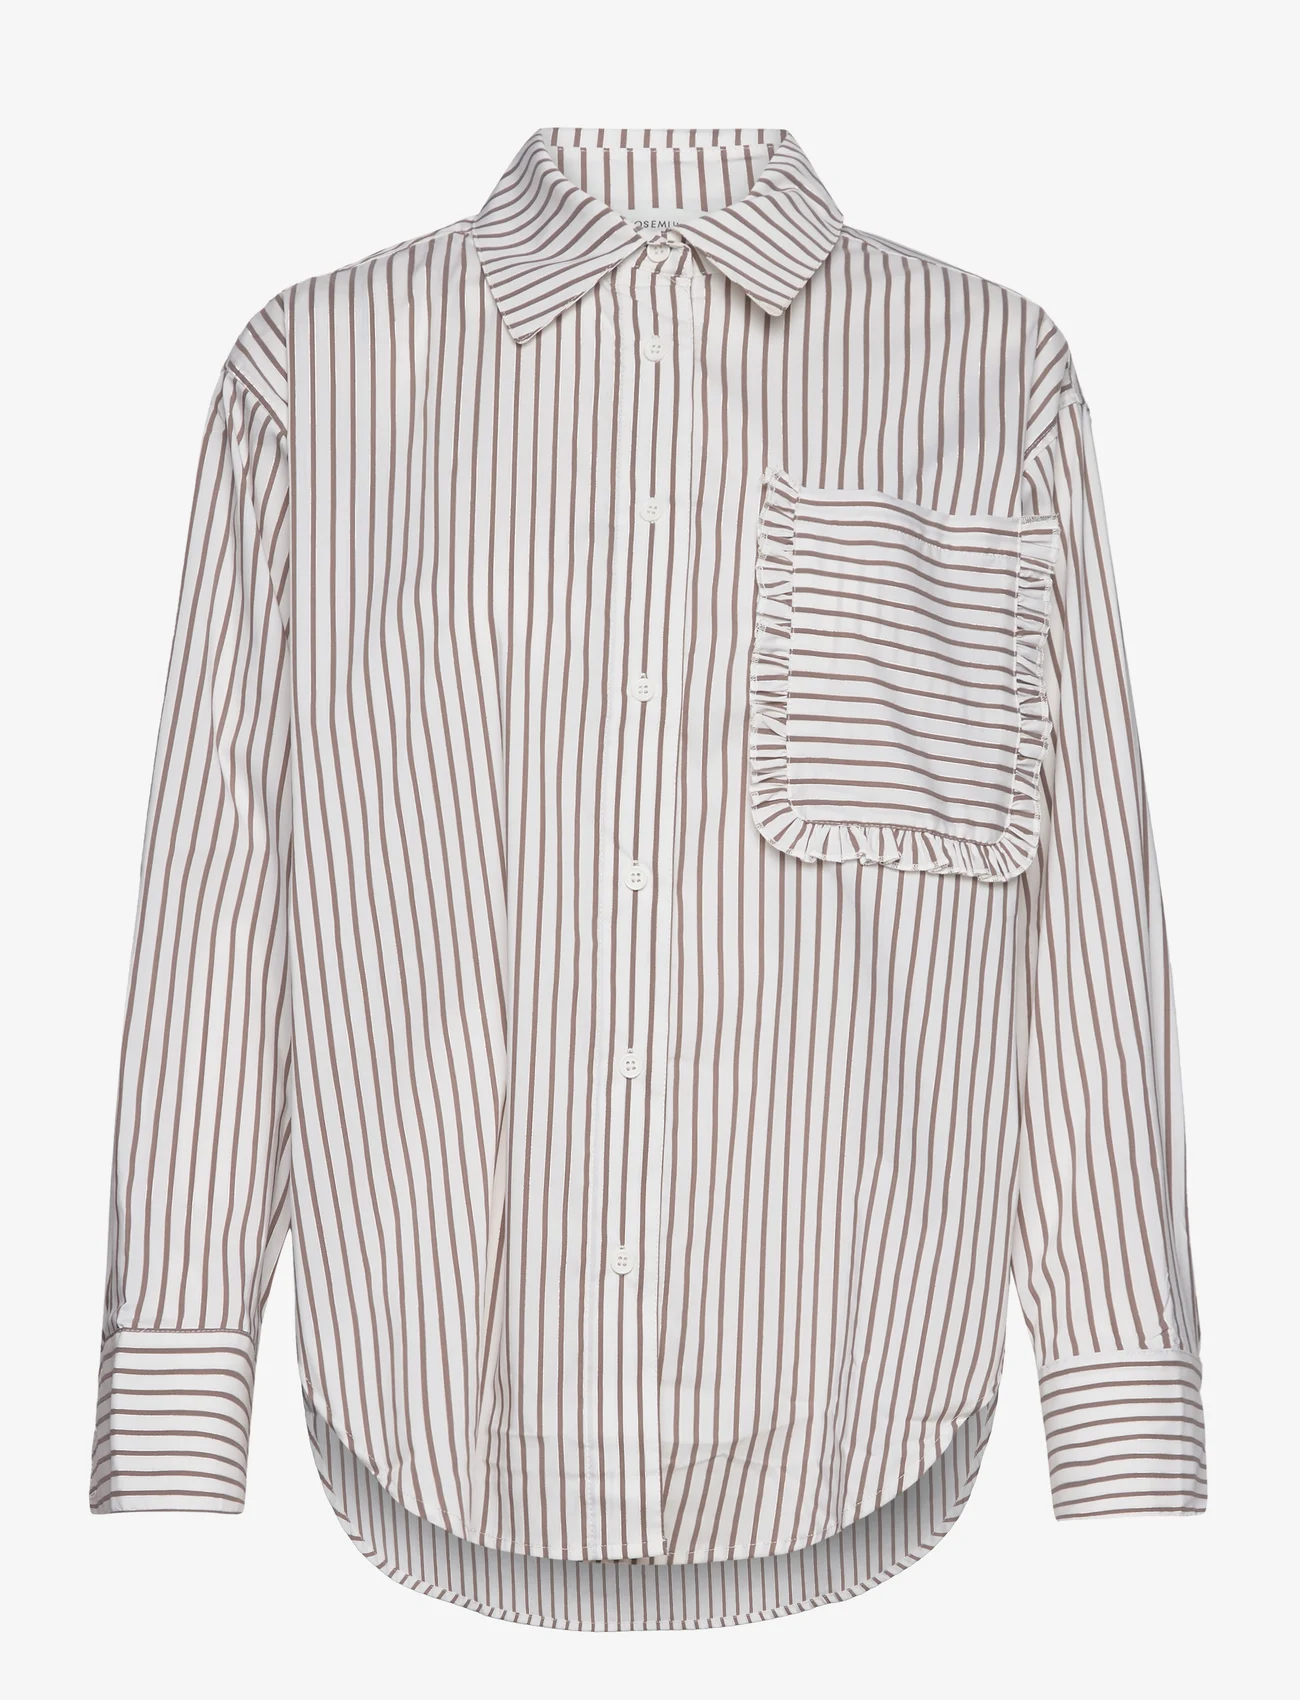 Rosemunde - Shirt - overhemden met lange mouwen - portobelle stripe - 0